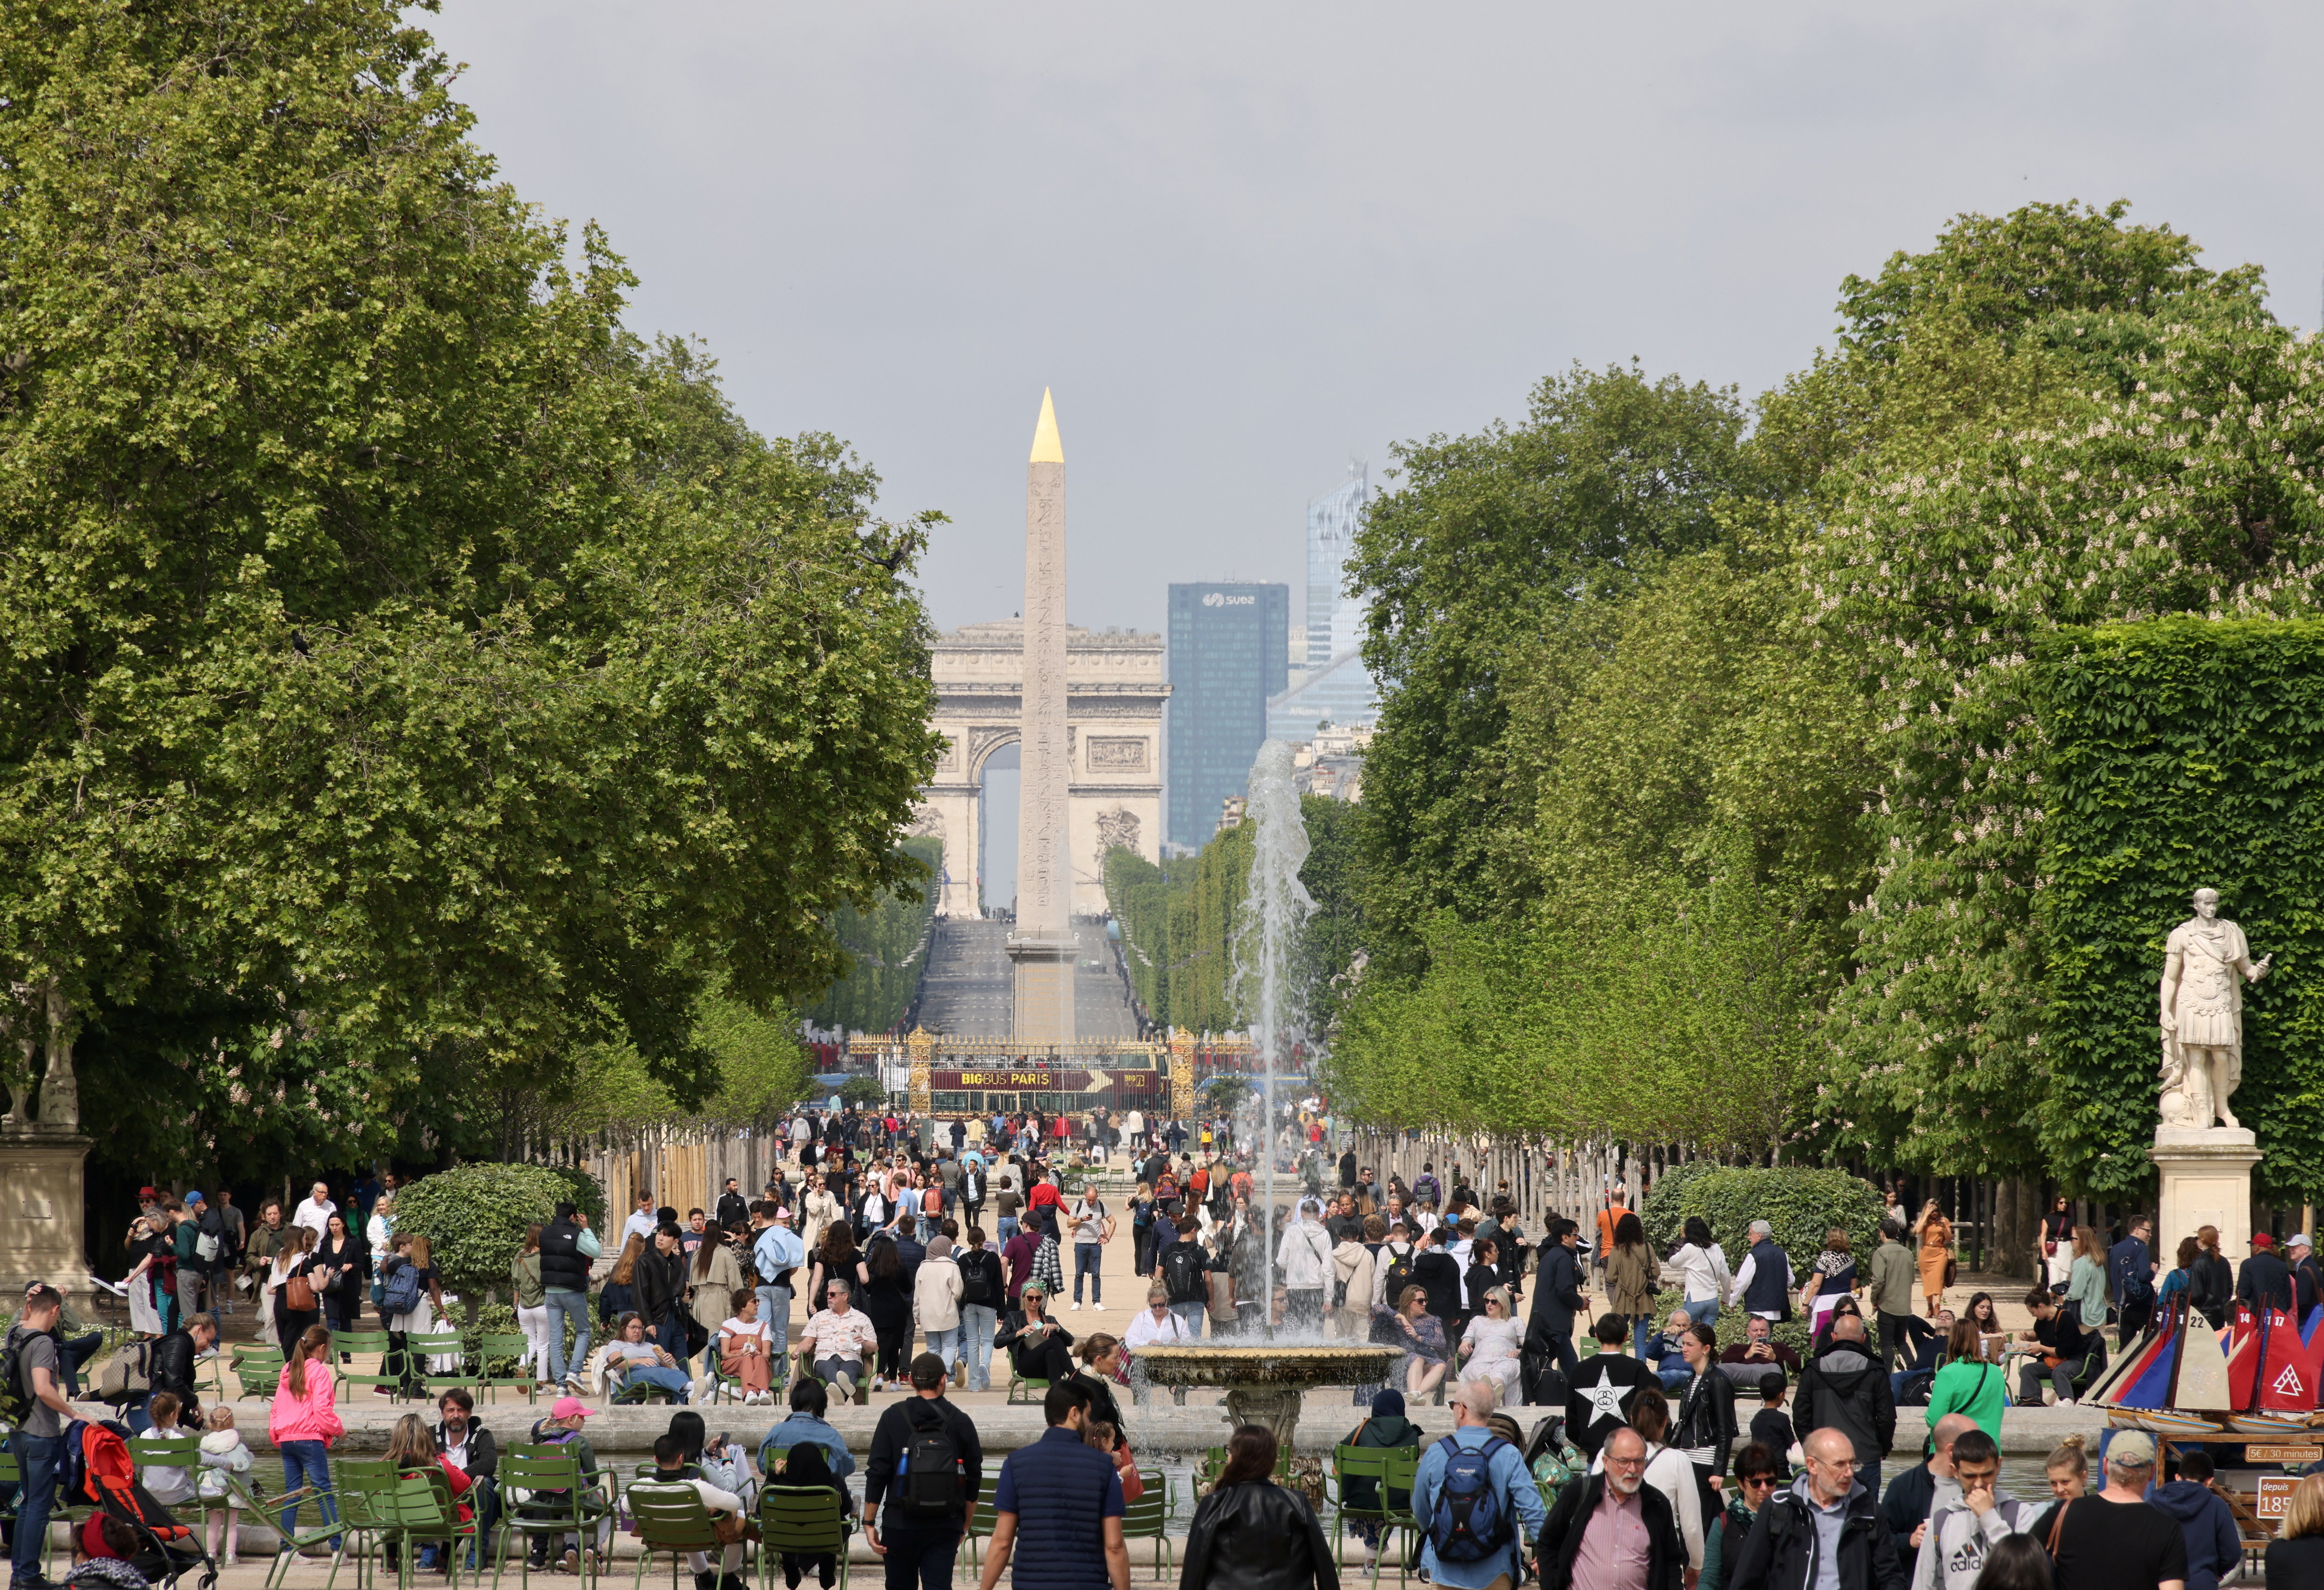 Entre le Louvre et la Place de la Concorde, le Jardin des Tuileries accueillera la vasque olympique. LP/Delphine Goldsztejn